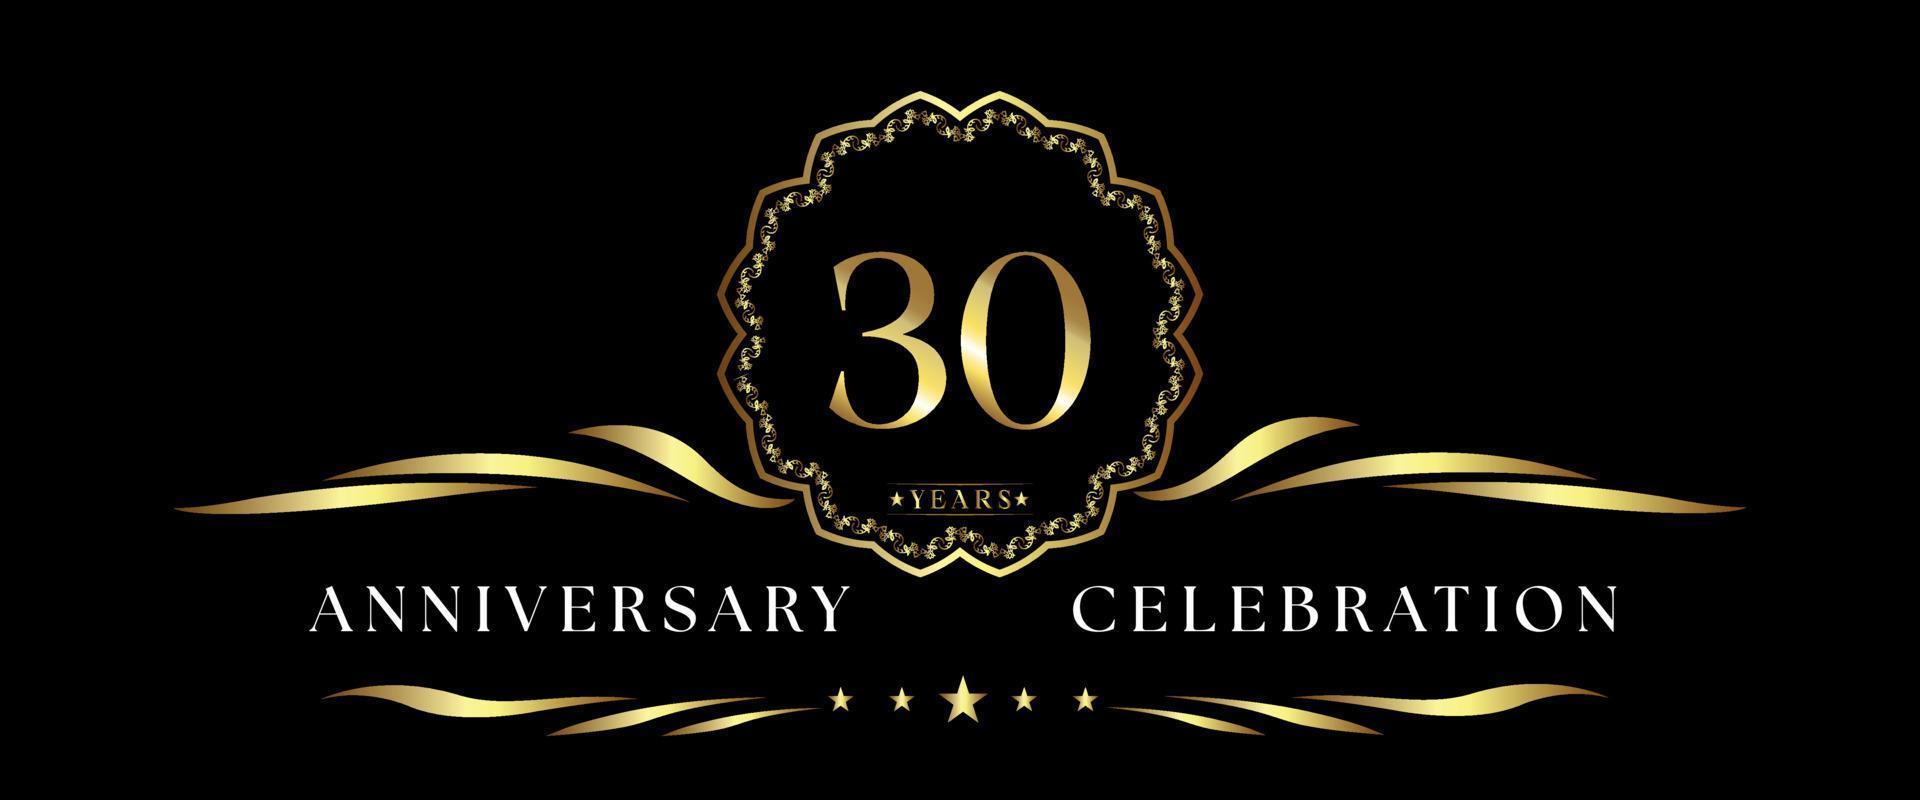 Celebrazione dell'anniversario di 30 anni con cornice decorativa dorata isolata su sfondo nero. disegno vettoriale per biglietto di auguri, festa di compleanno, matrimonio, festa evento, cerimonia. Logo dell'anniversario di 30 anni.